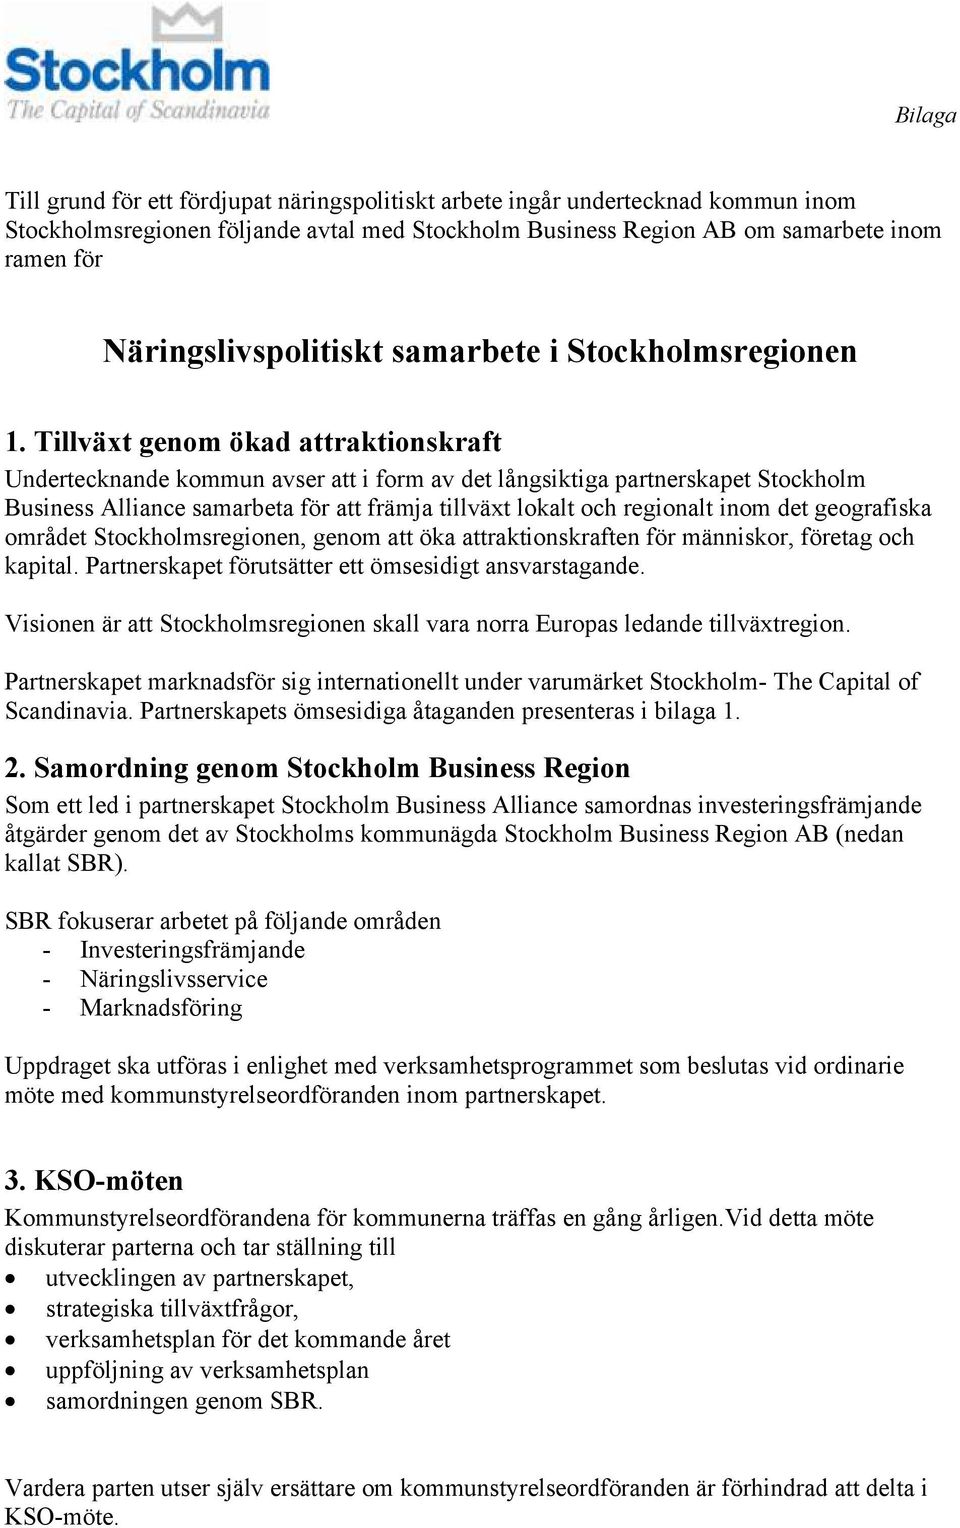 Tillväxt genom ökad attraktionskraft Undertecknande kommun avser att i form av det långsiktiga partnerskapet Stockholm Business Alliance samarbeta för att främja tillväxt lokalt och regionalt inom